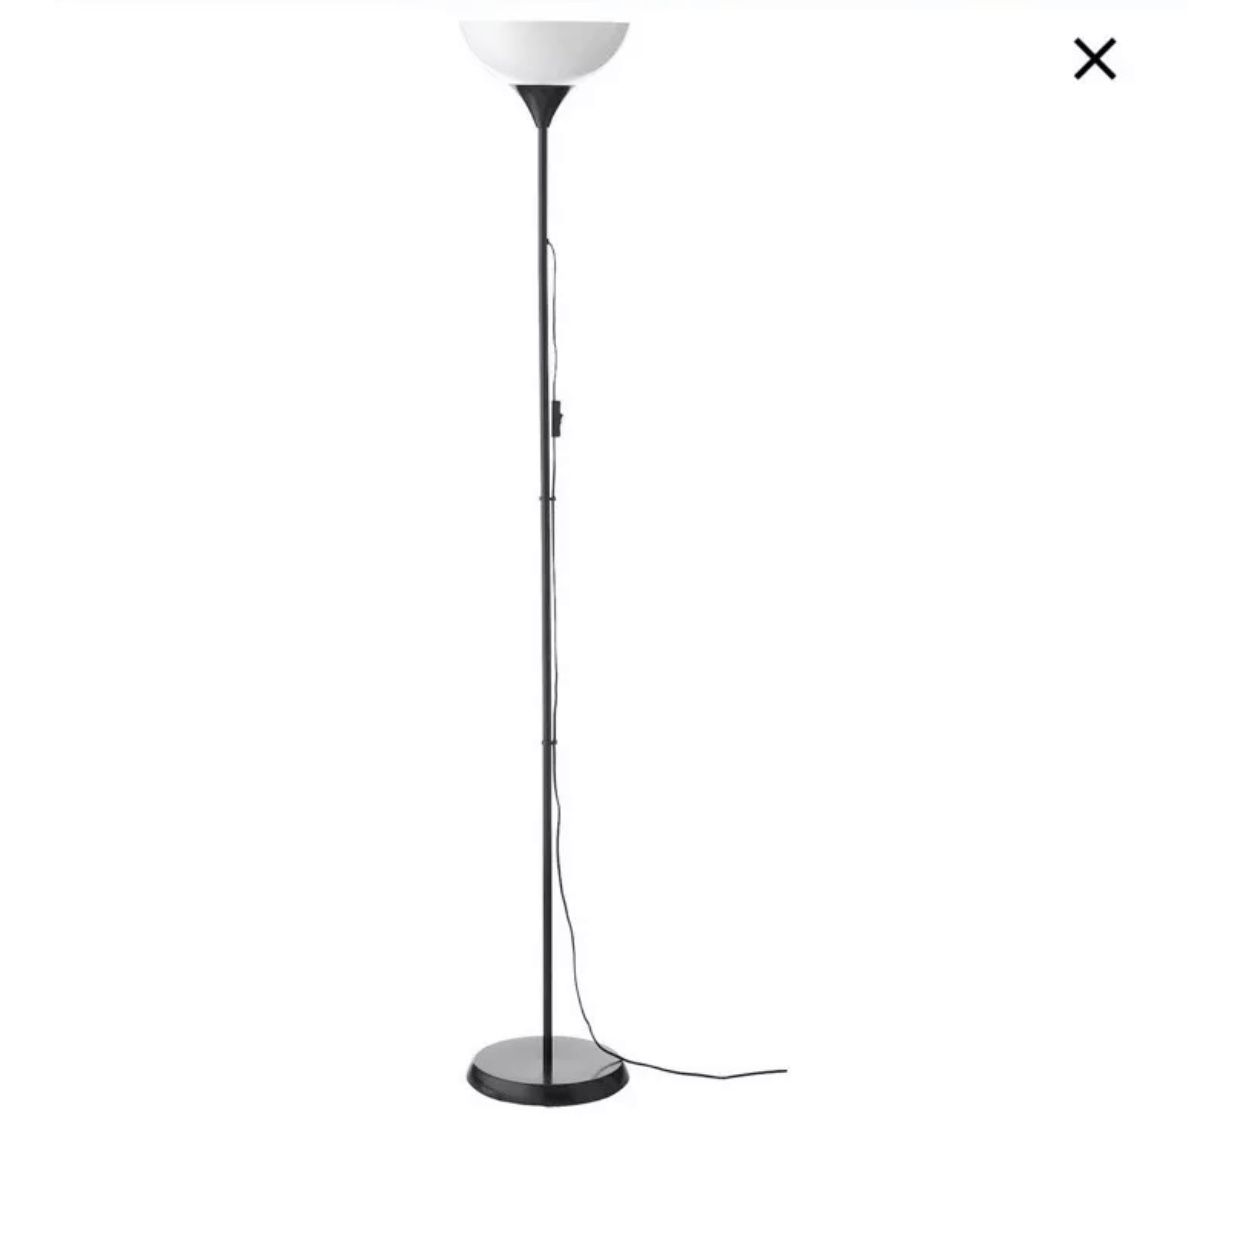 New IKEA Floor Lamp, nice design !